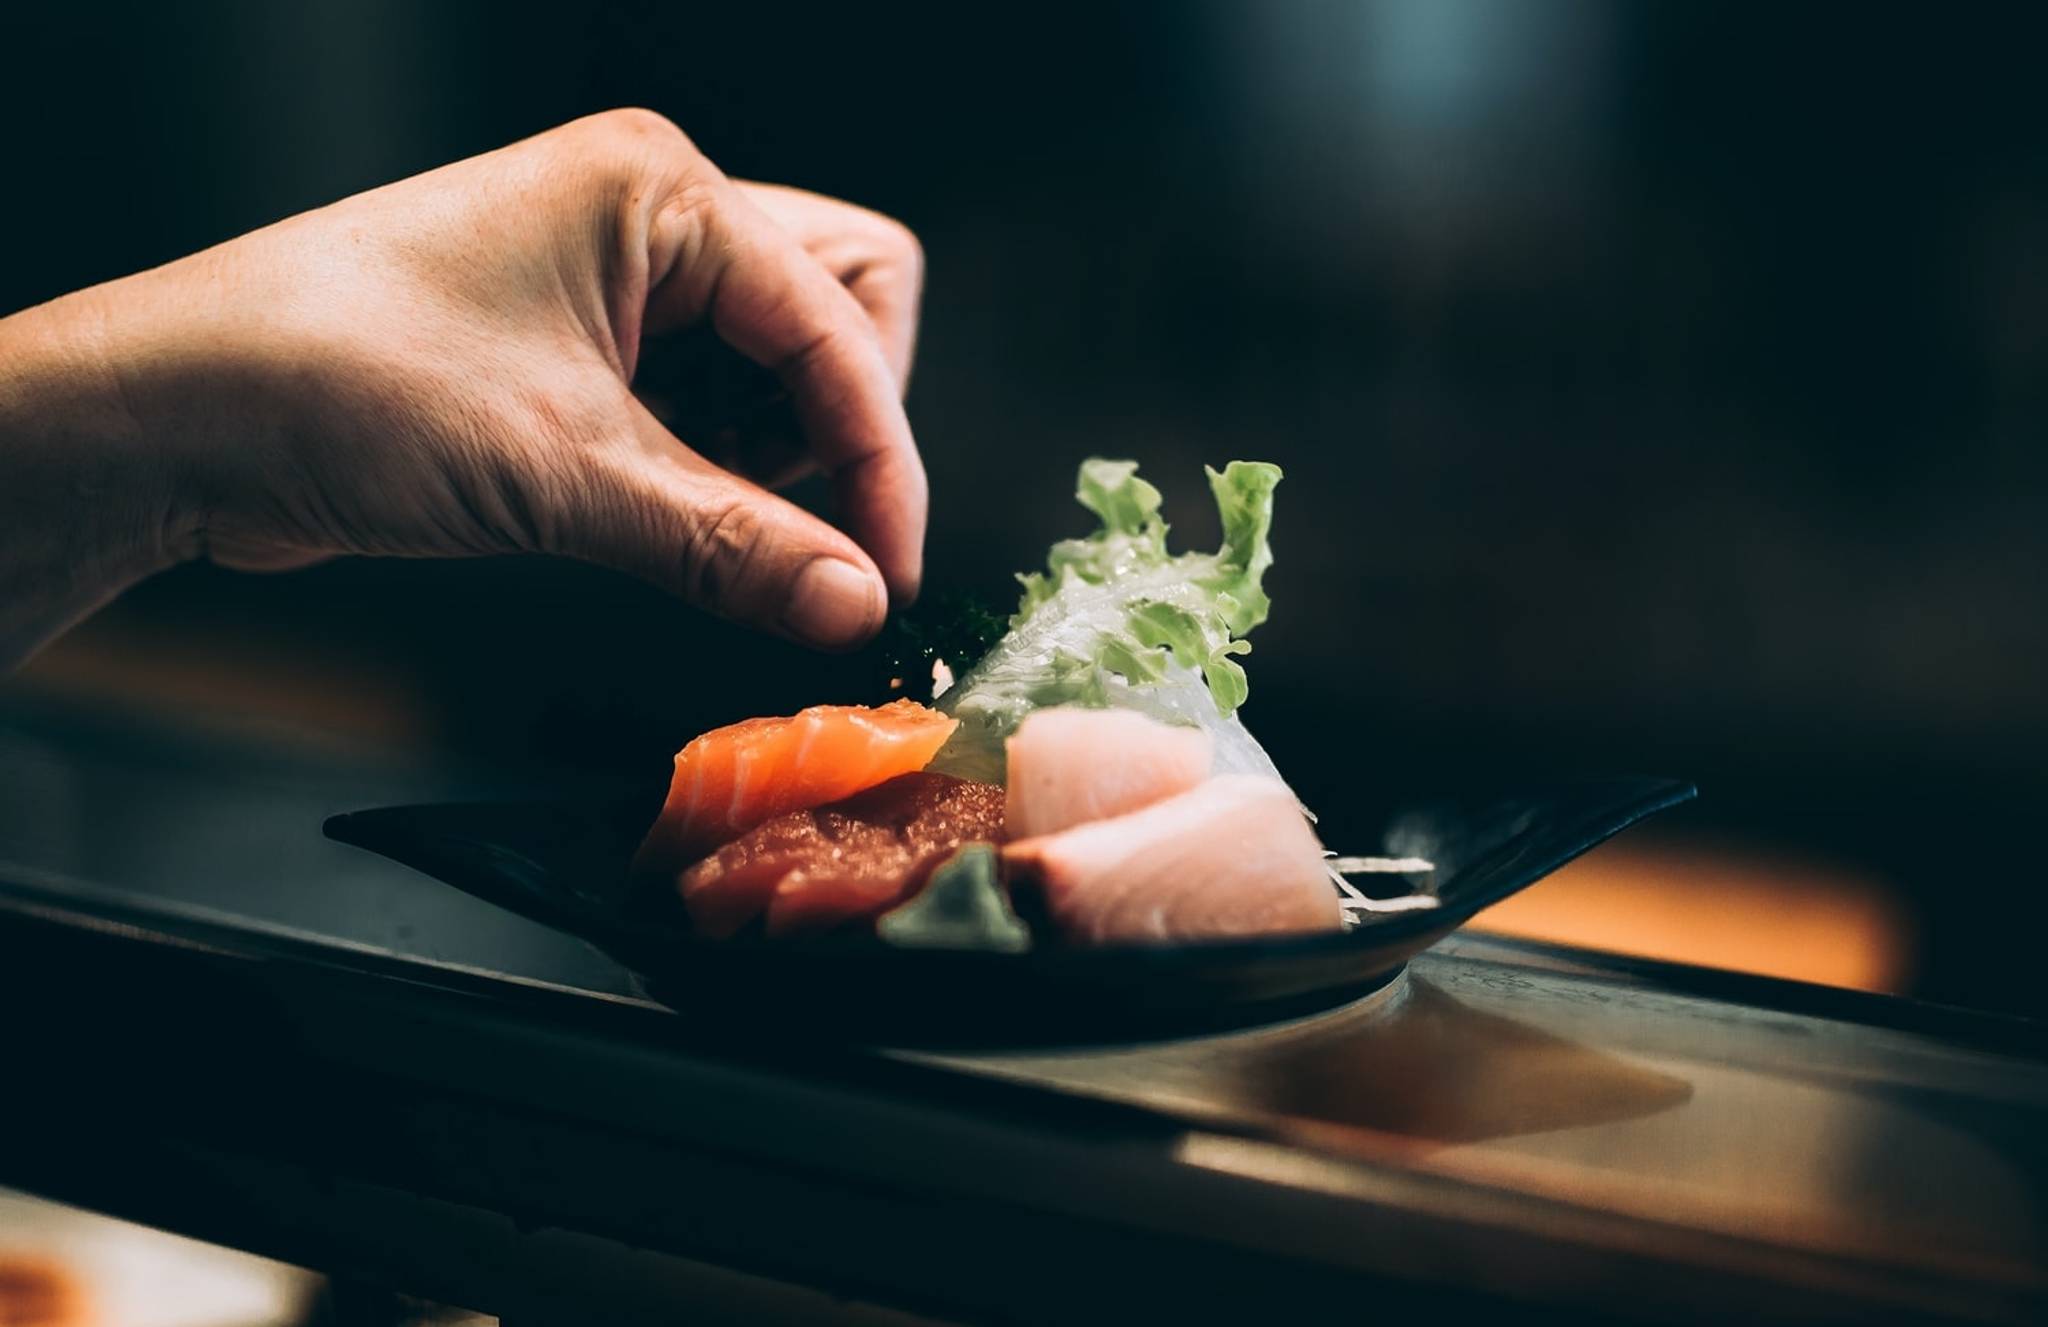 Japanese households hire chefs for lockdown cuisine